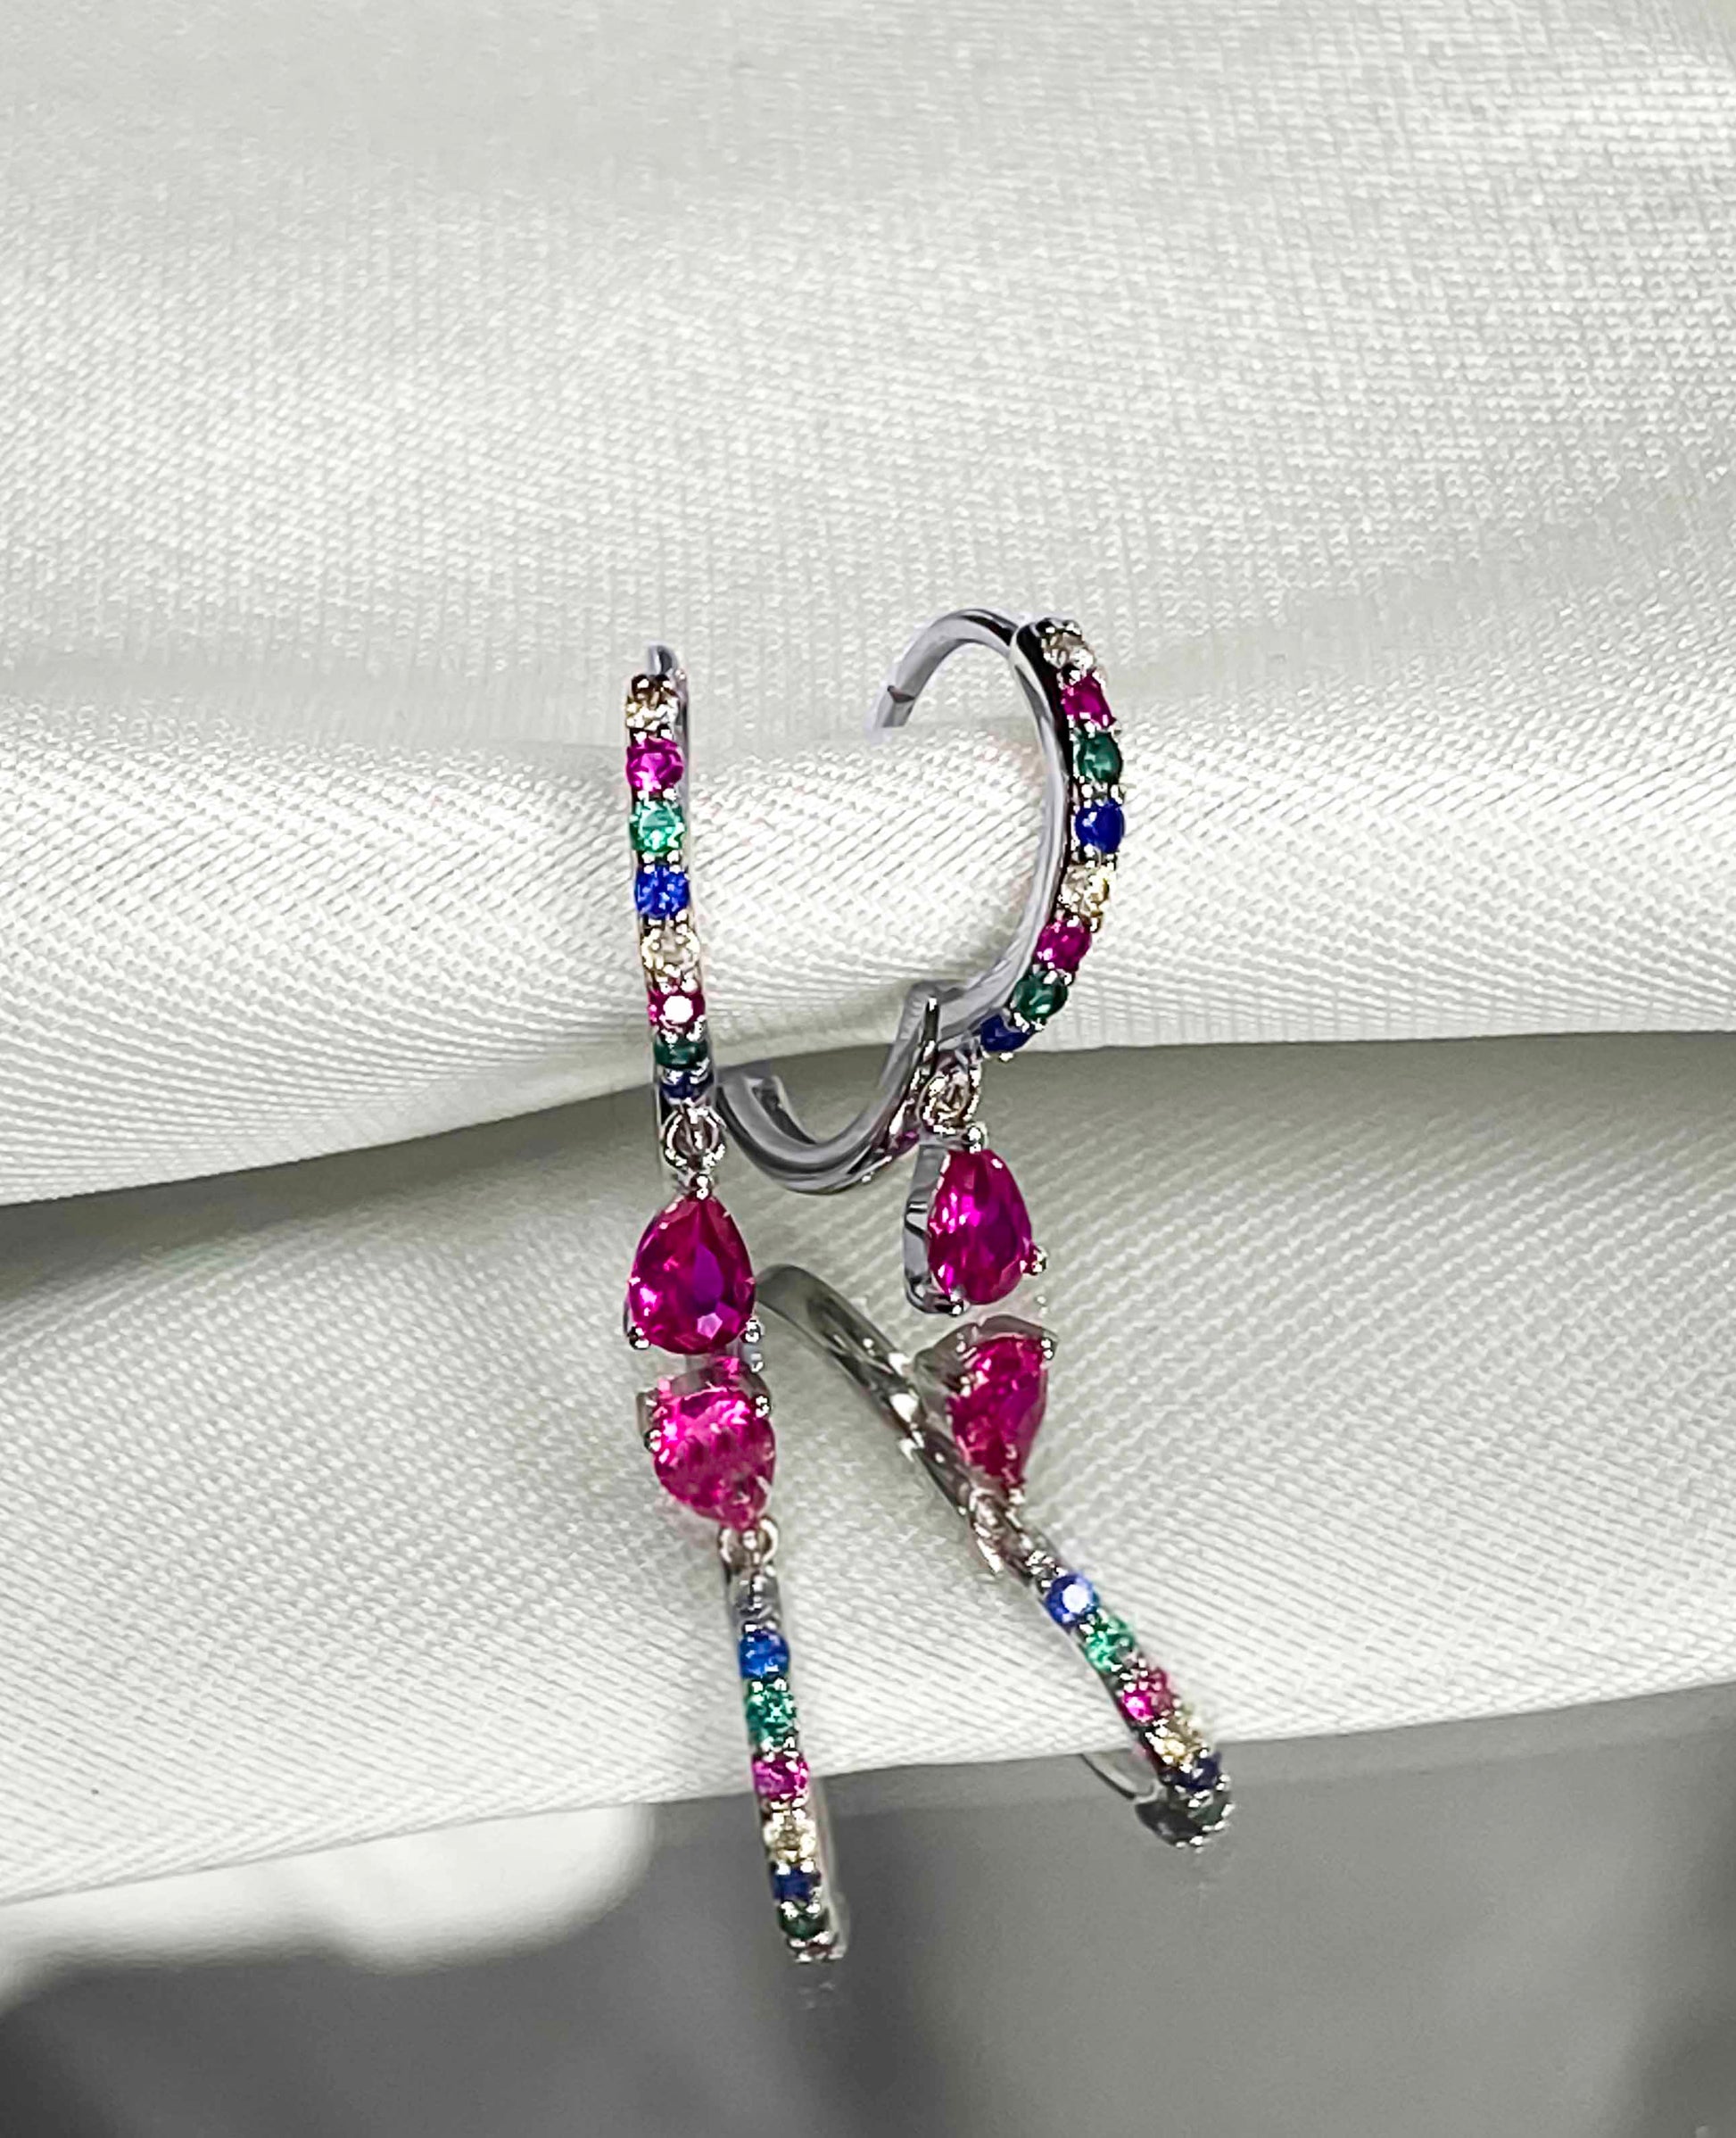  925 sterling silver huggie hoop earrings with multicolored zirconia stones. 